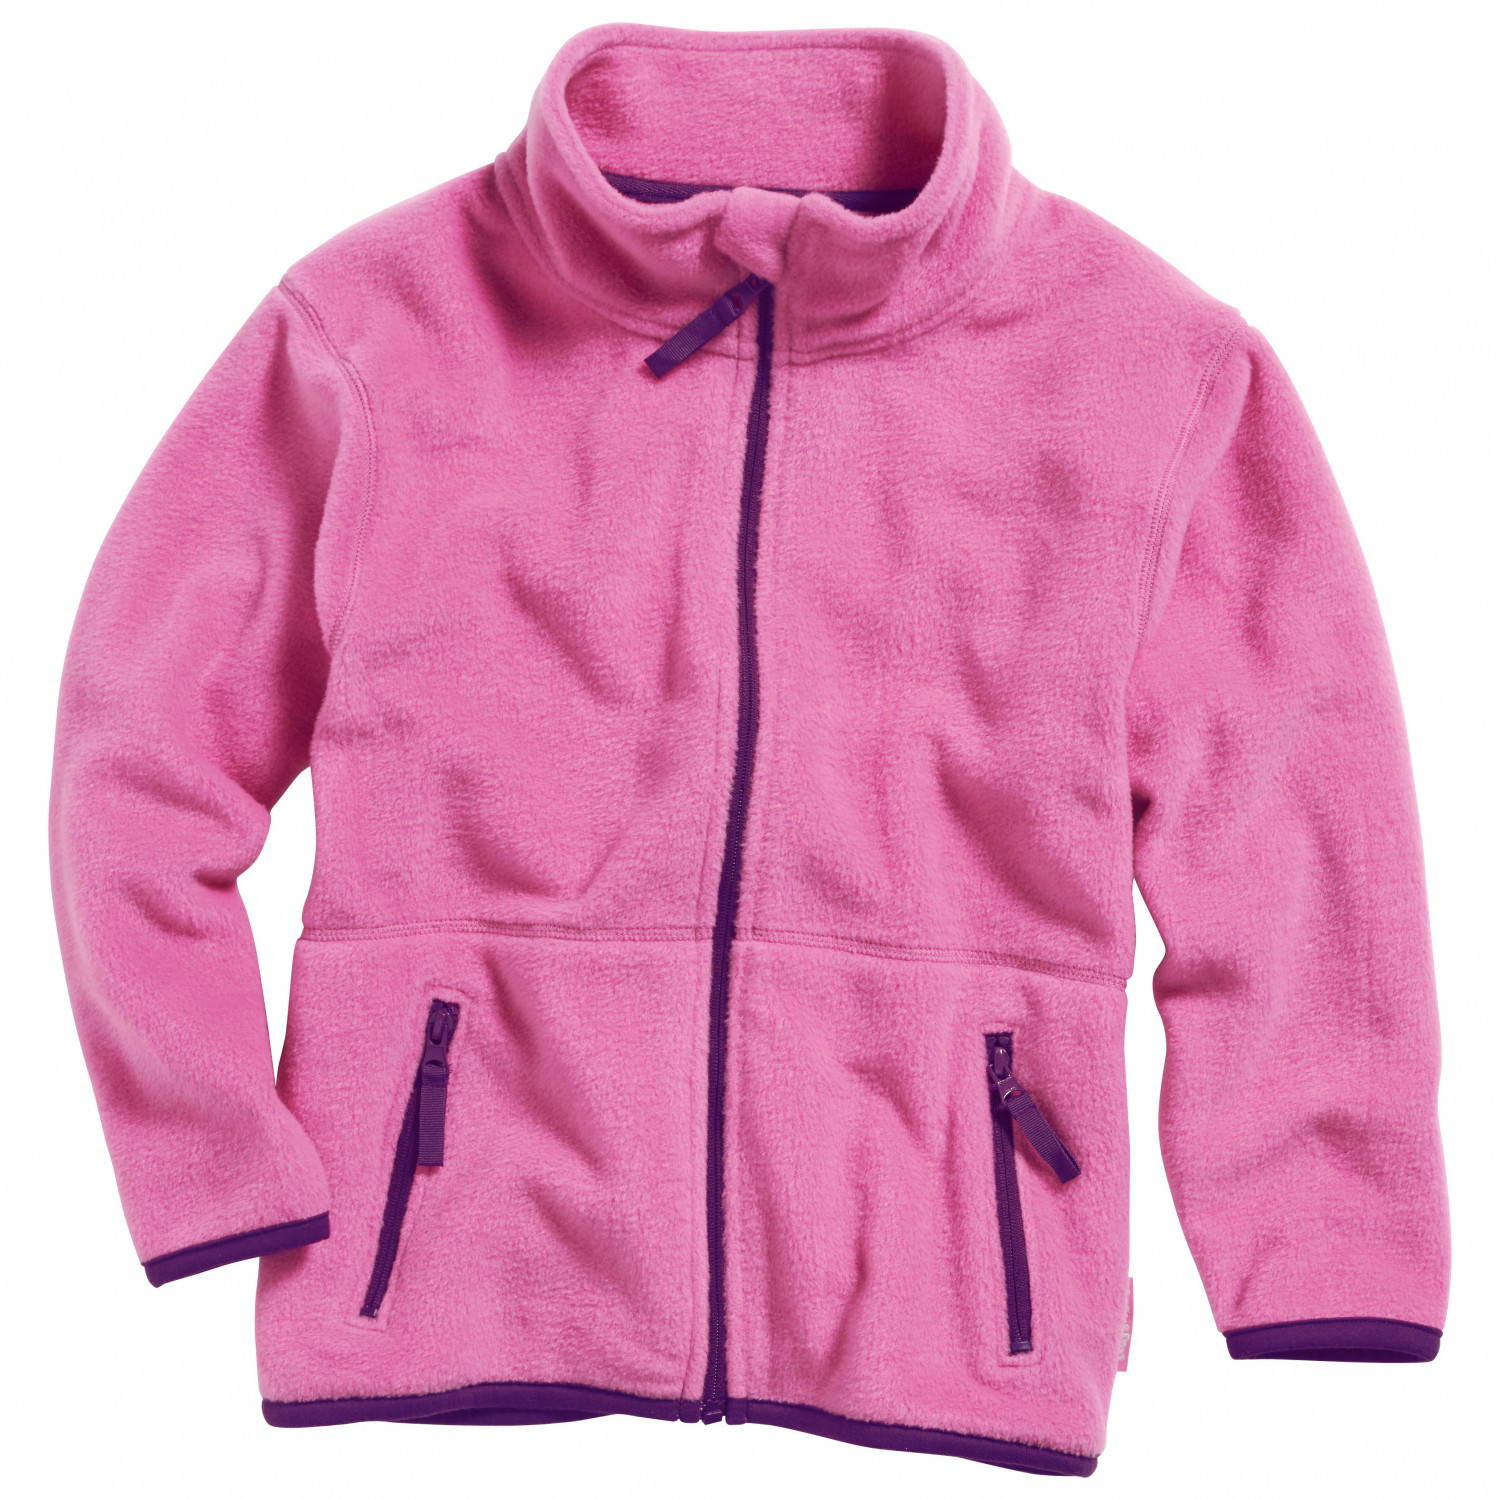 Флисовая жилетка Playshoes Kid's Fleece Jacke, розовый